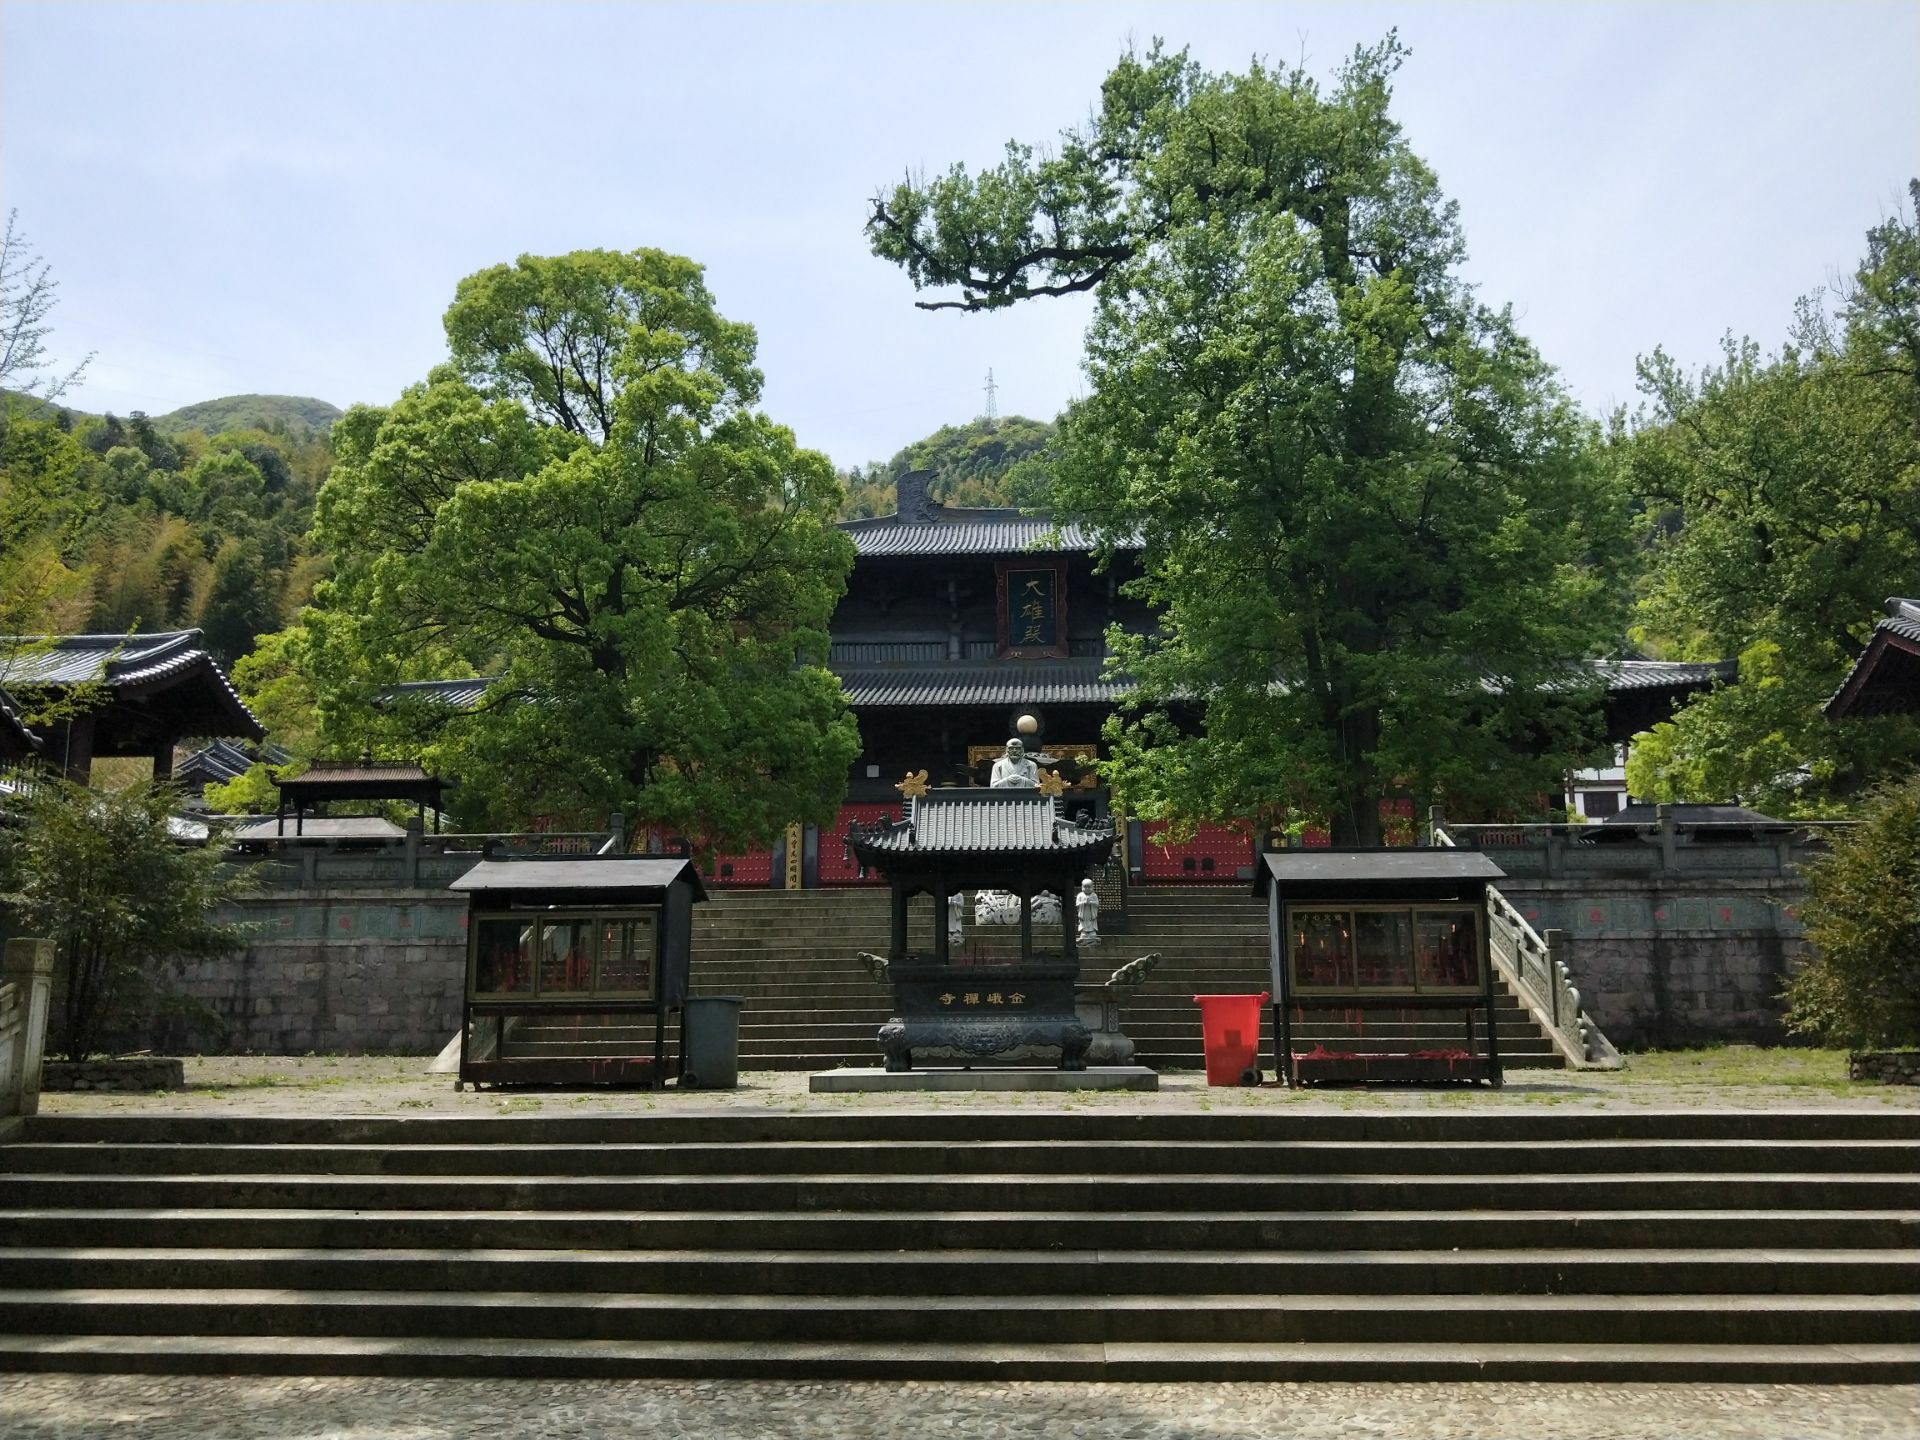 金峨禅寺创建于唐朝大历元年已有1200多年的悠久历史四周群山环绕溪水